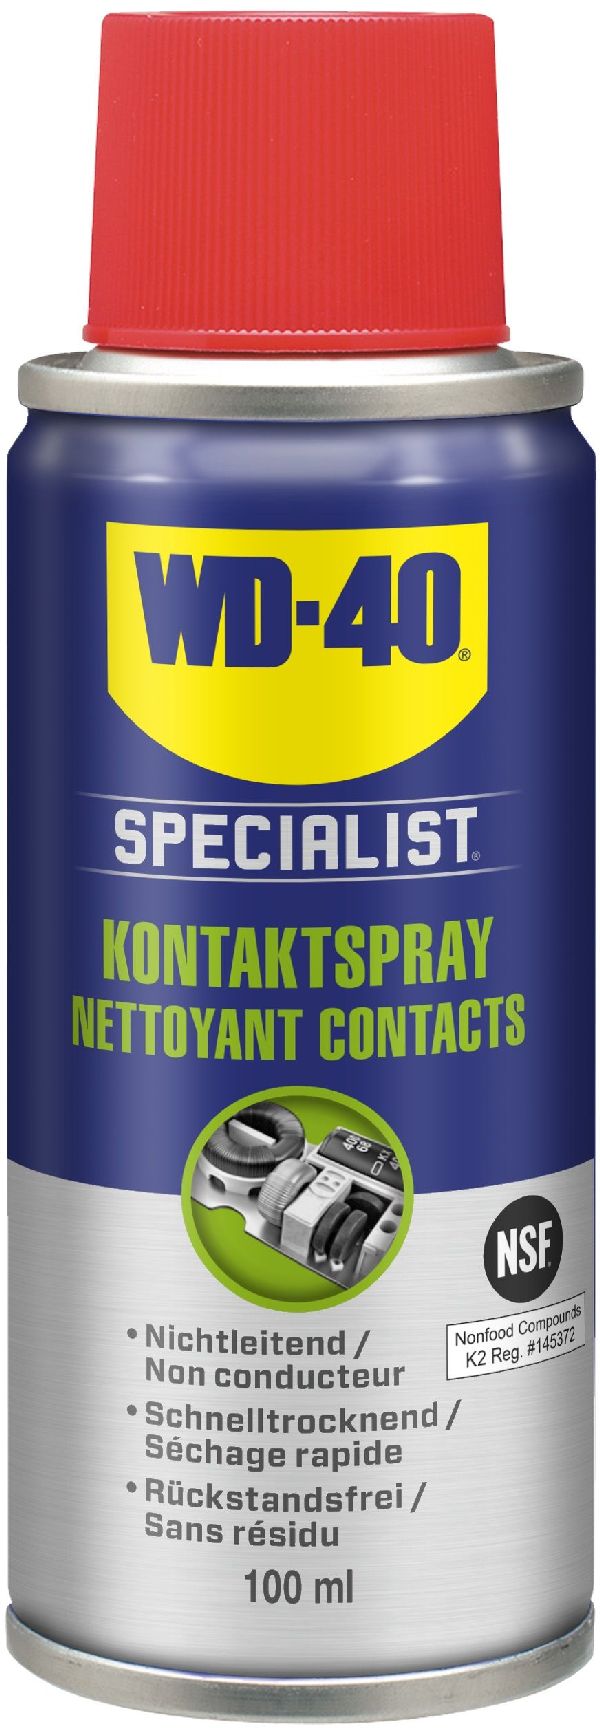 WD-40 Specialist Kontaktspray Spraydose 100 ml